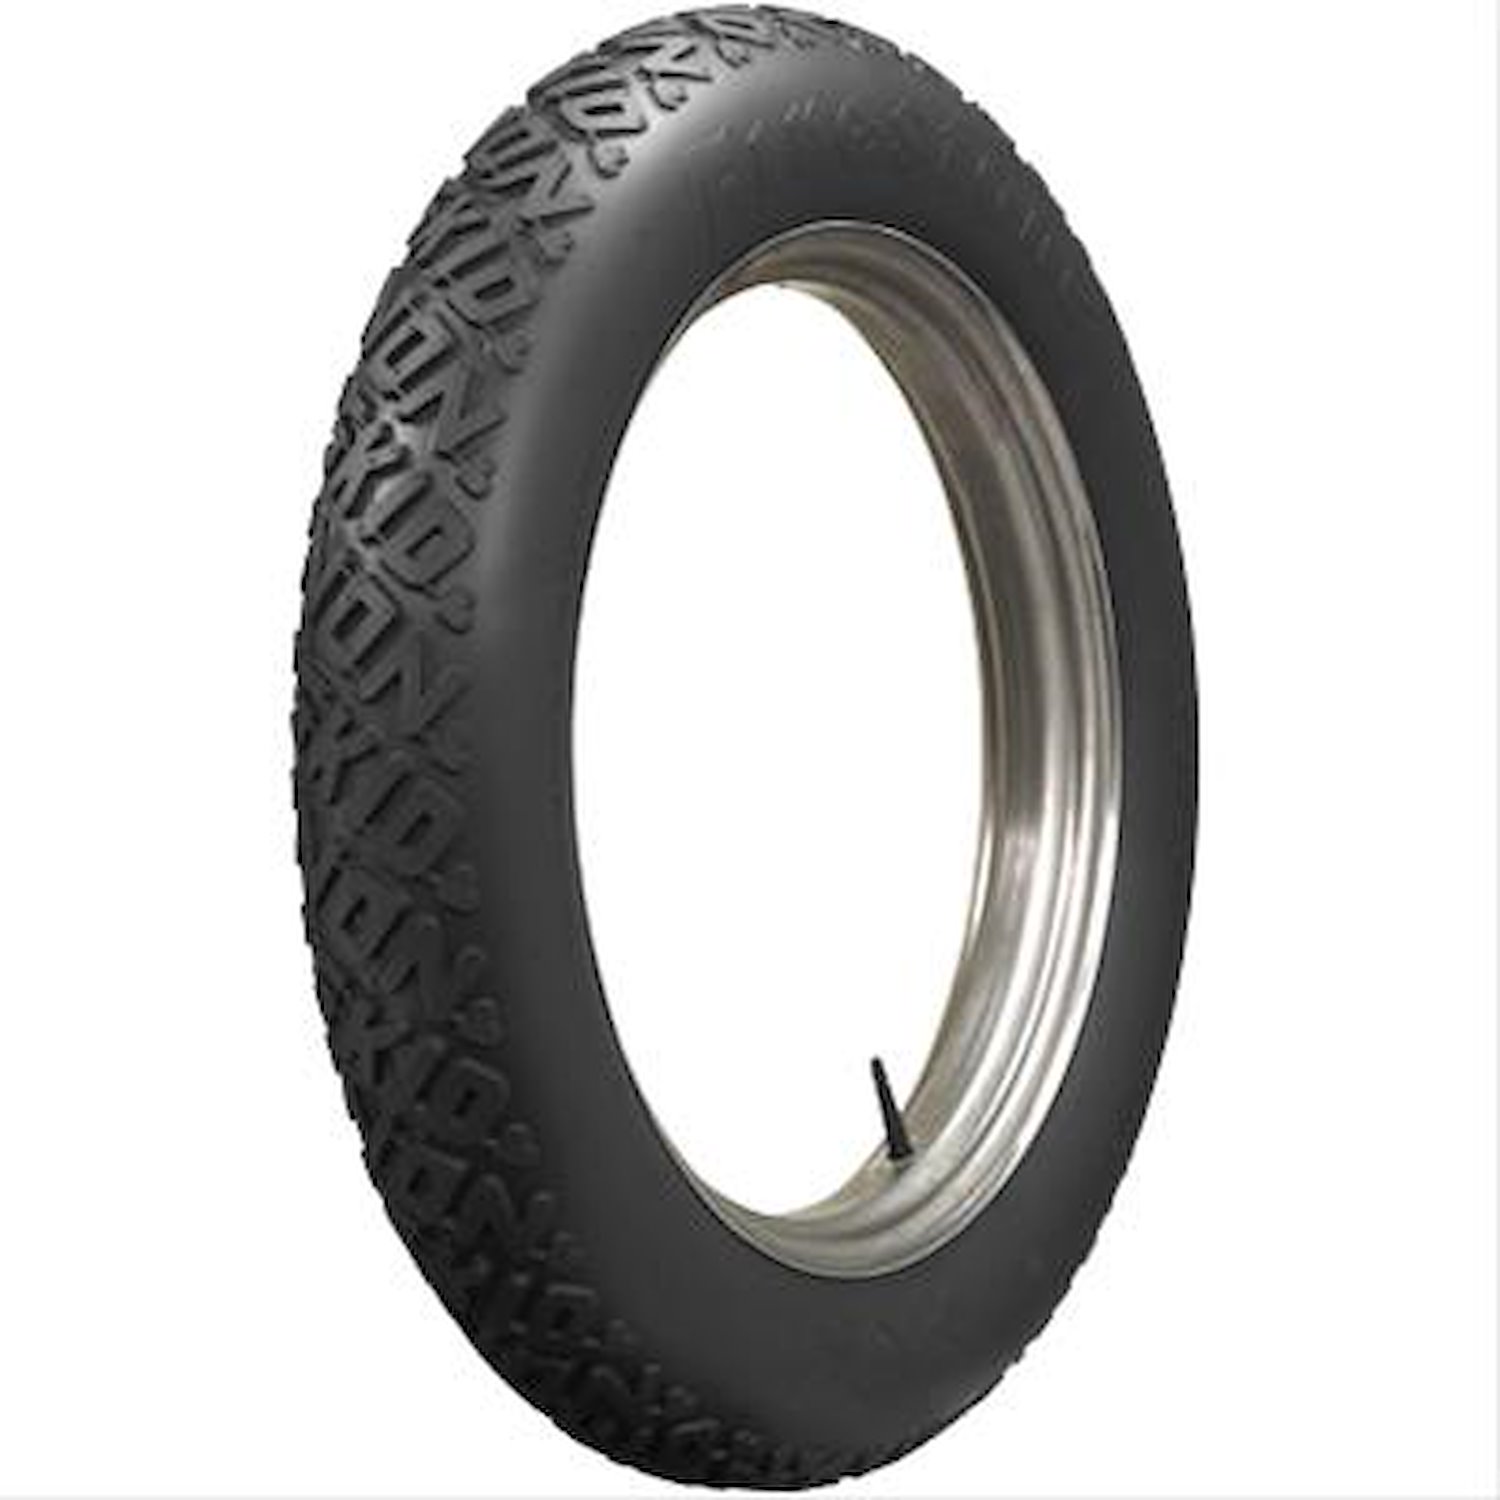 806020 Tire, Firestone Non-Skid, All Black, 36x4 1/2